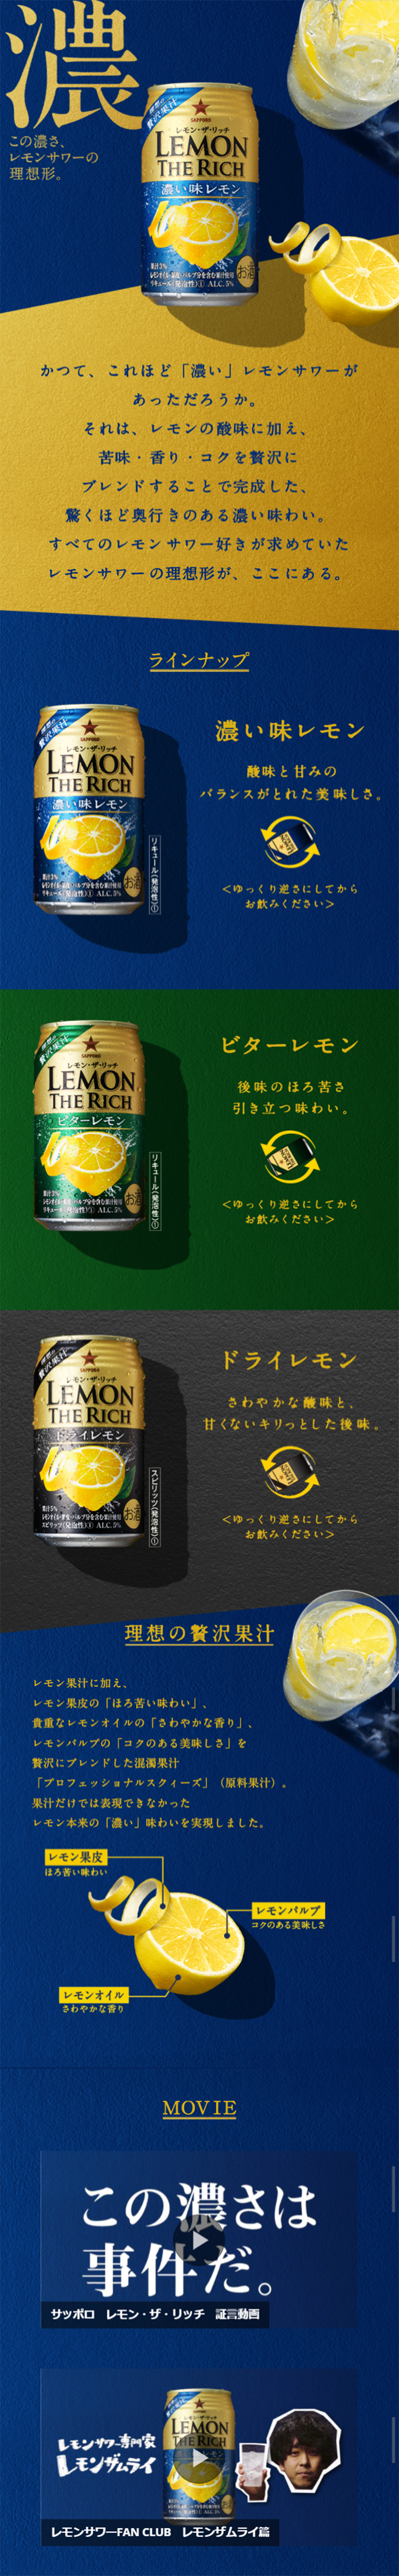 レモン・ザ・リッチ_sp_1